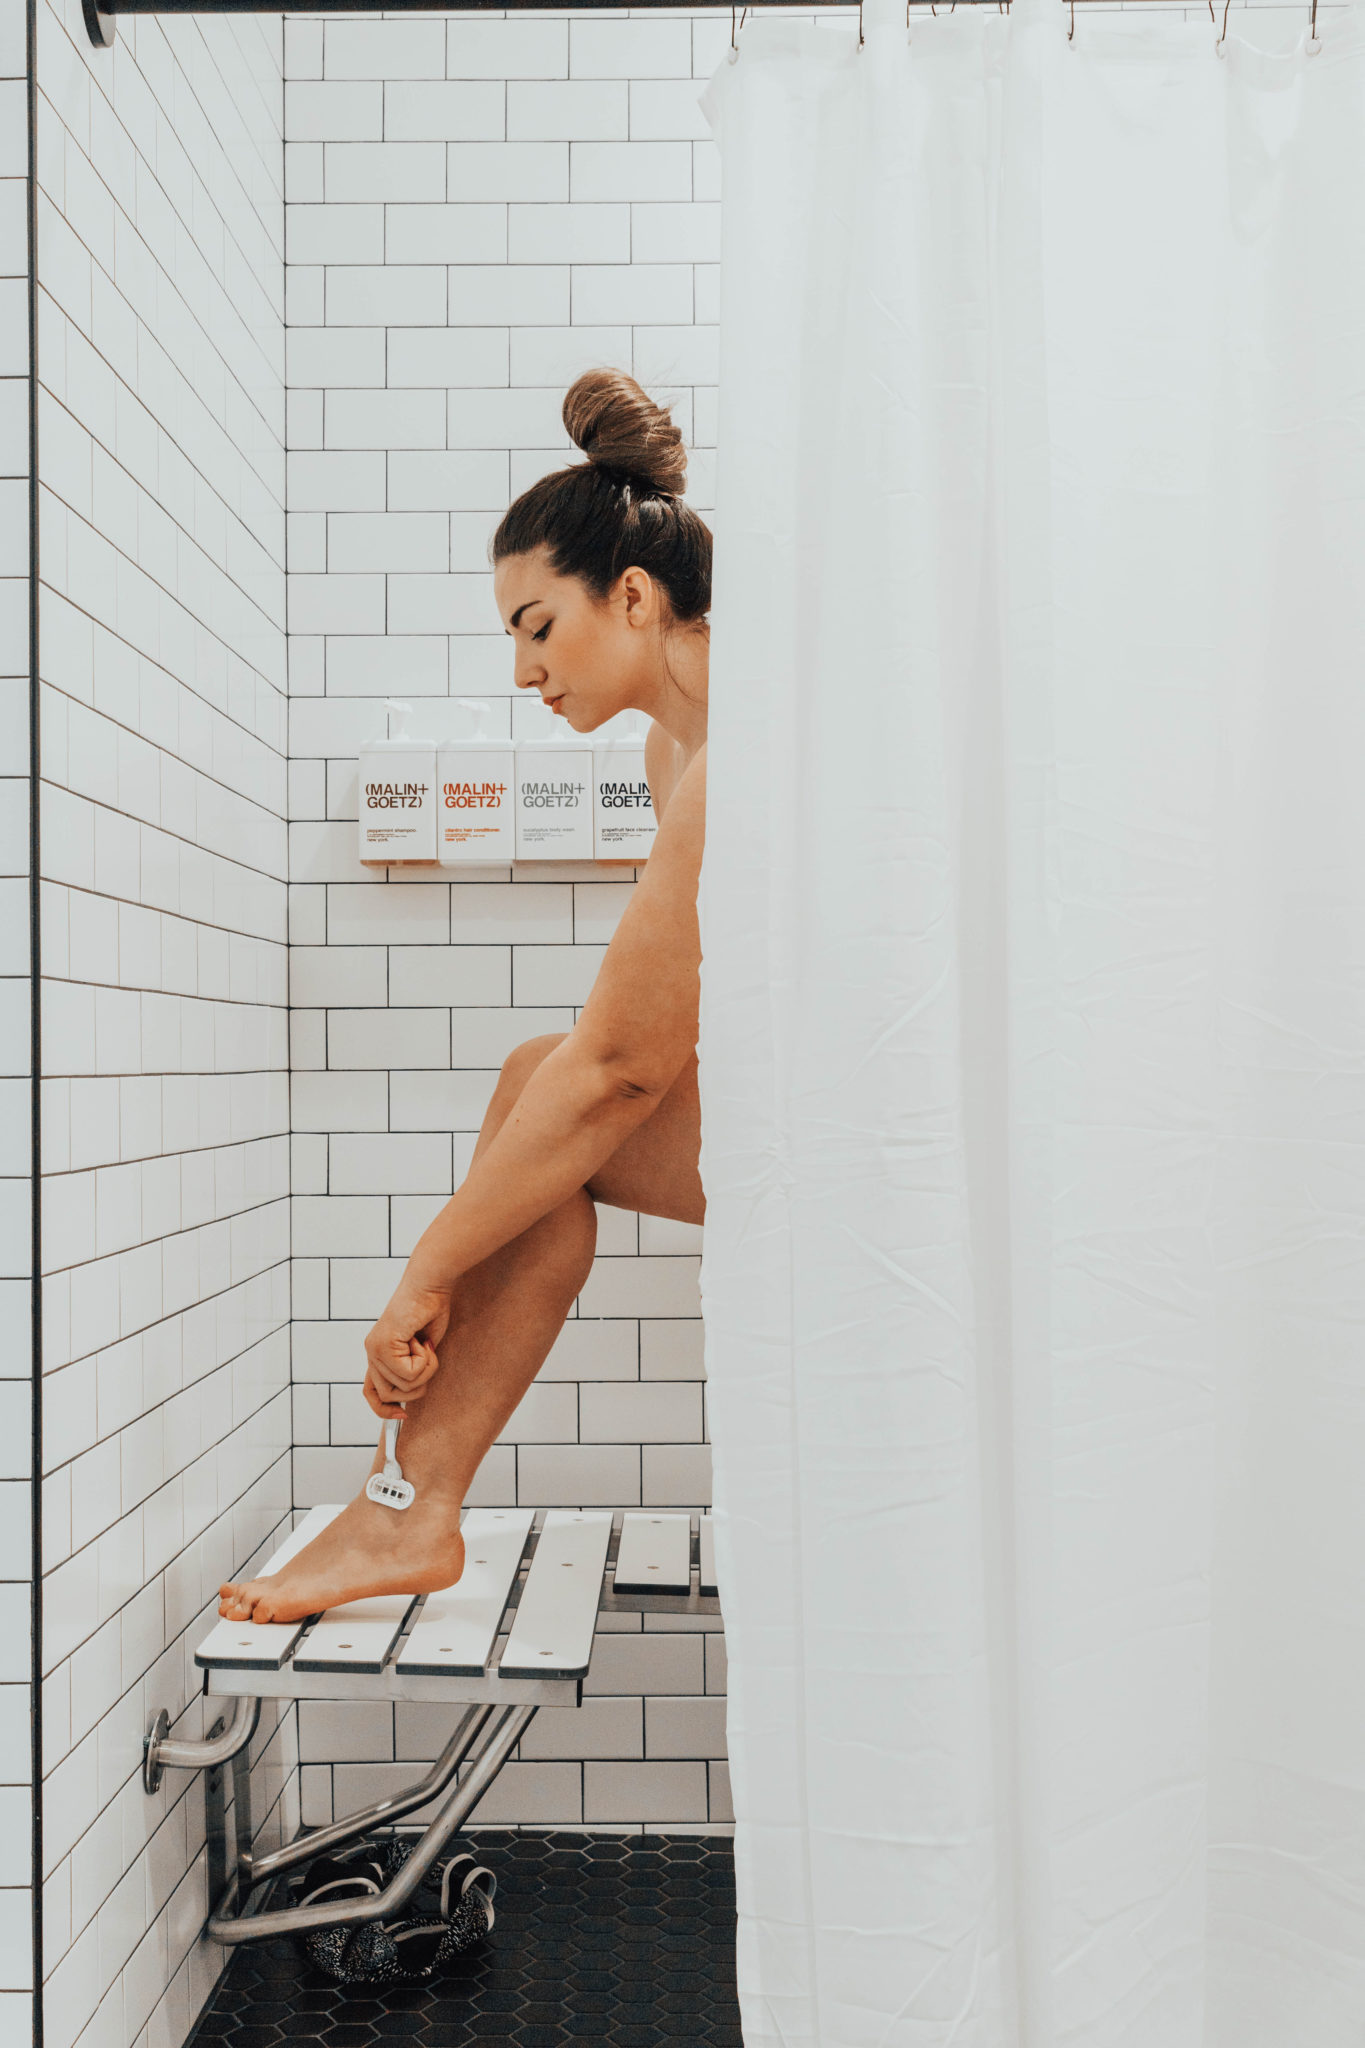 Brunette girl with hair in a bun standing in white tiled shower shaving her legs.